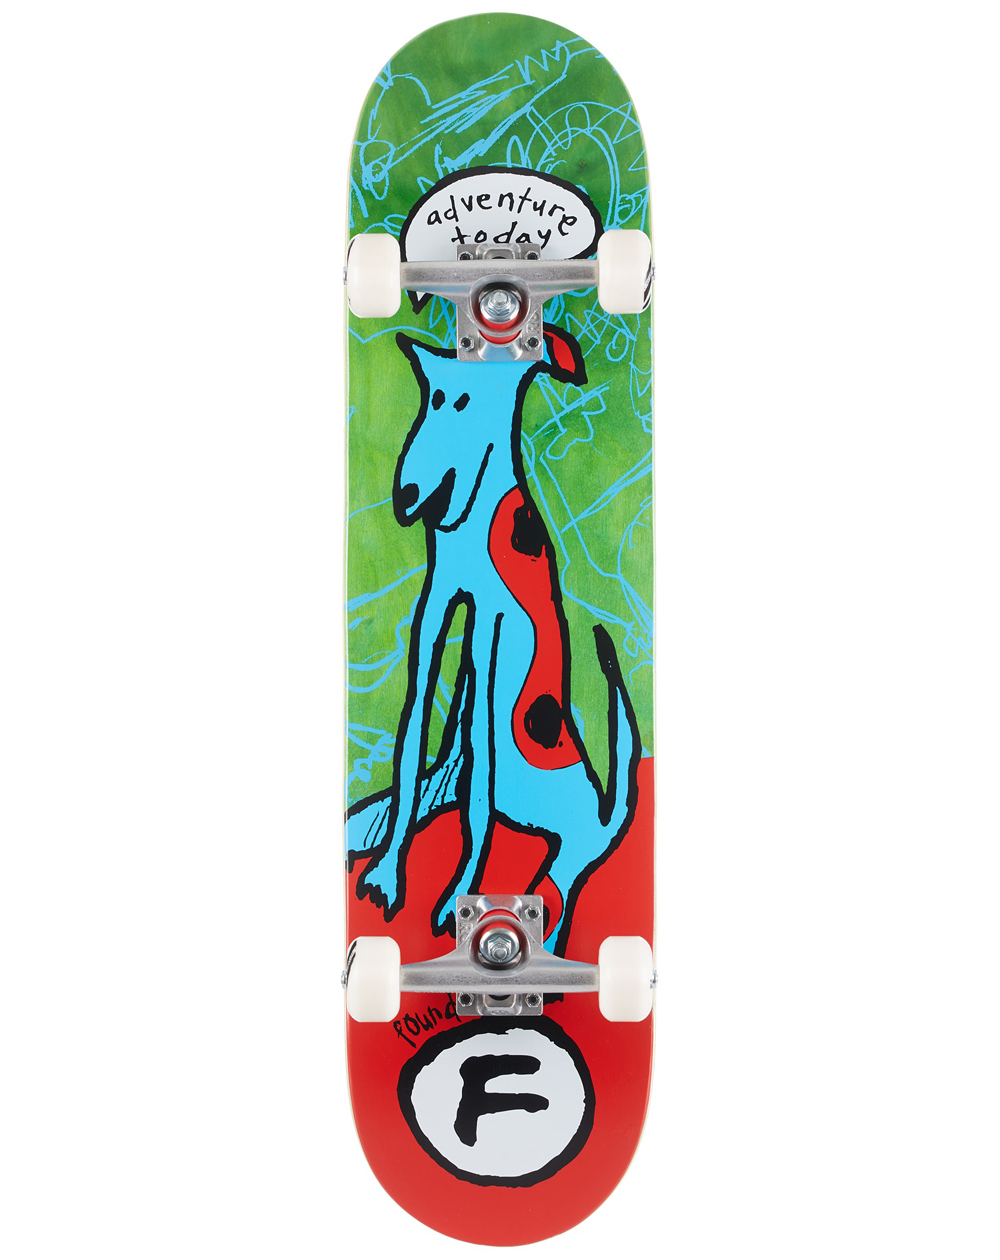 Foundation Skateboard Complète Adventure 2020 7.75" Green